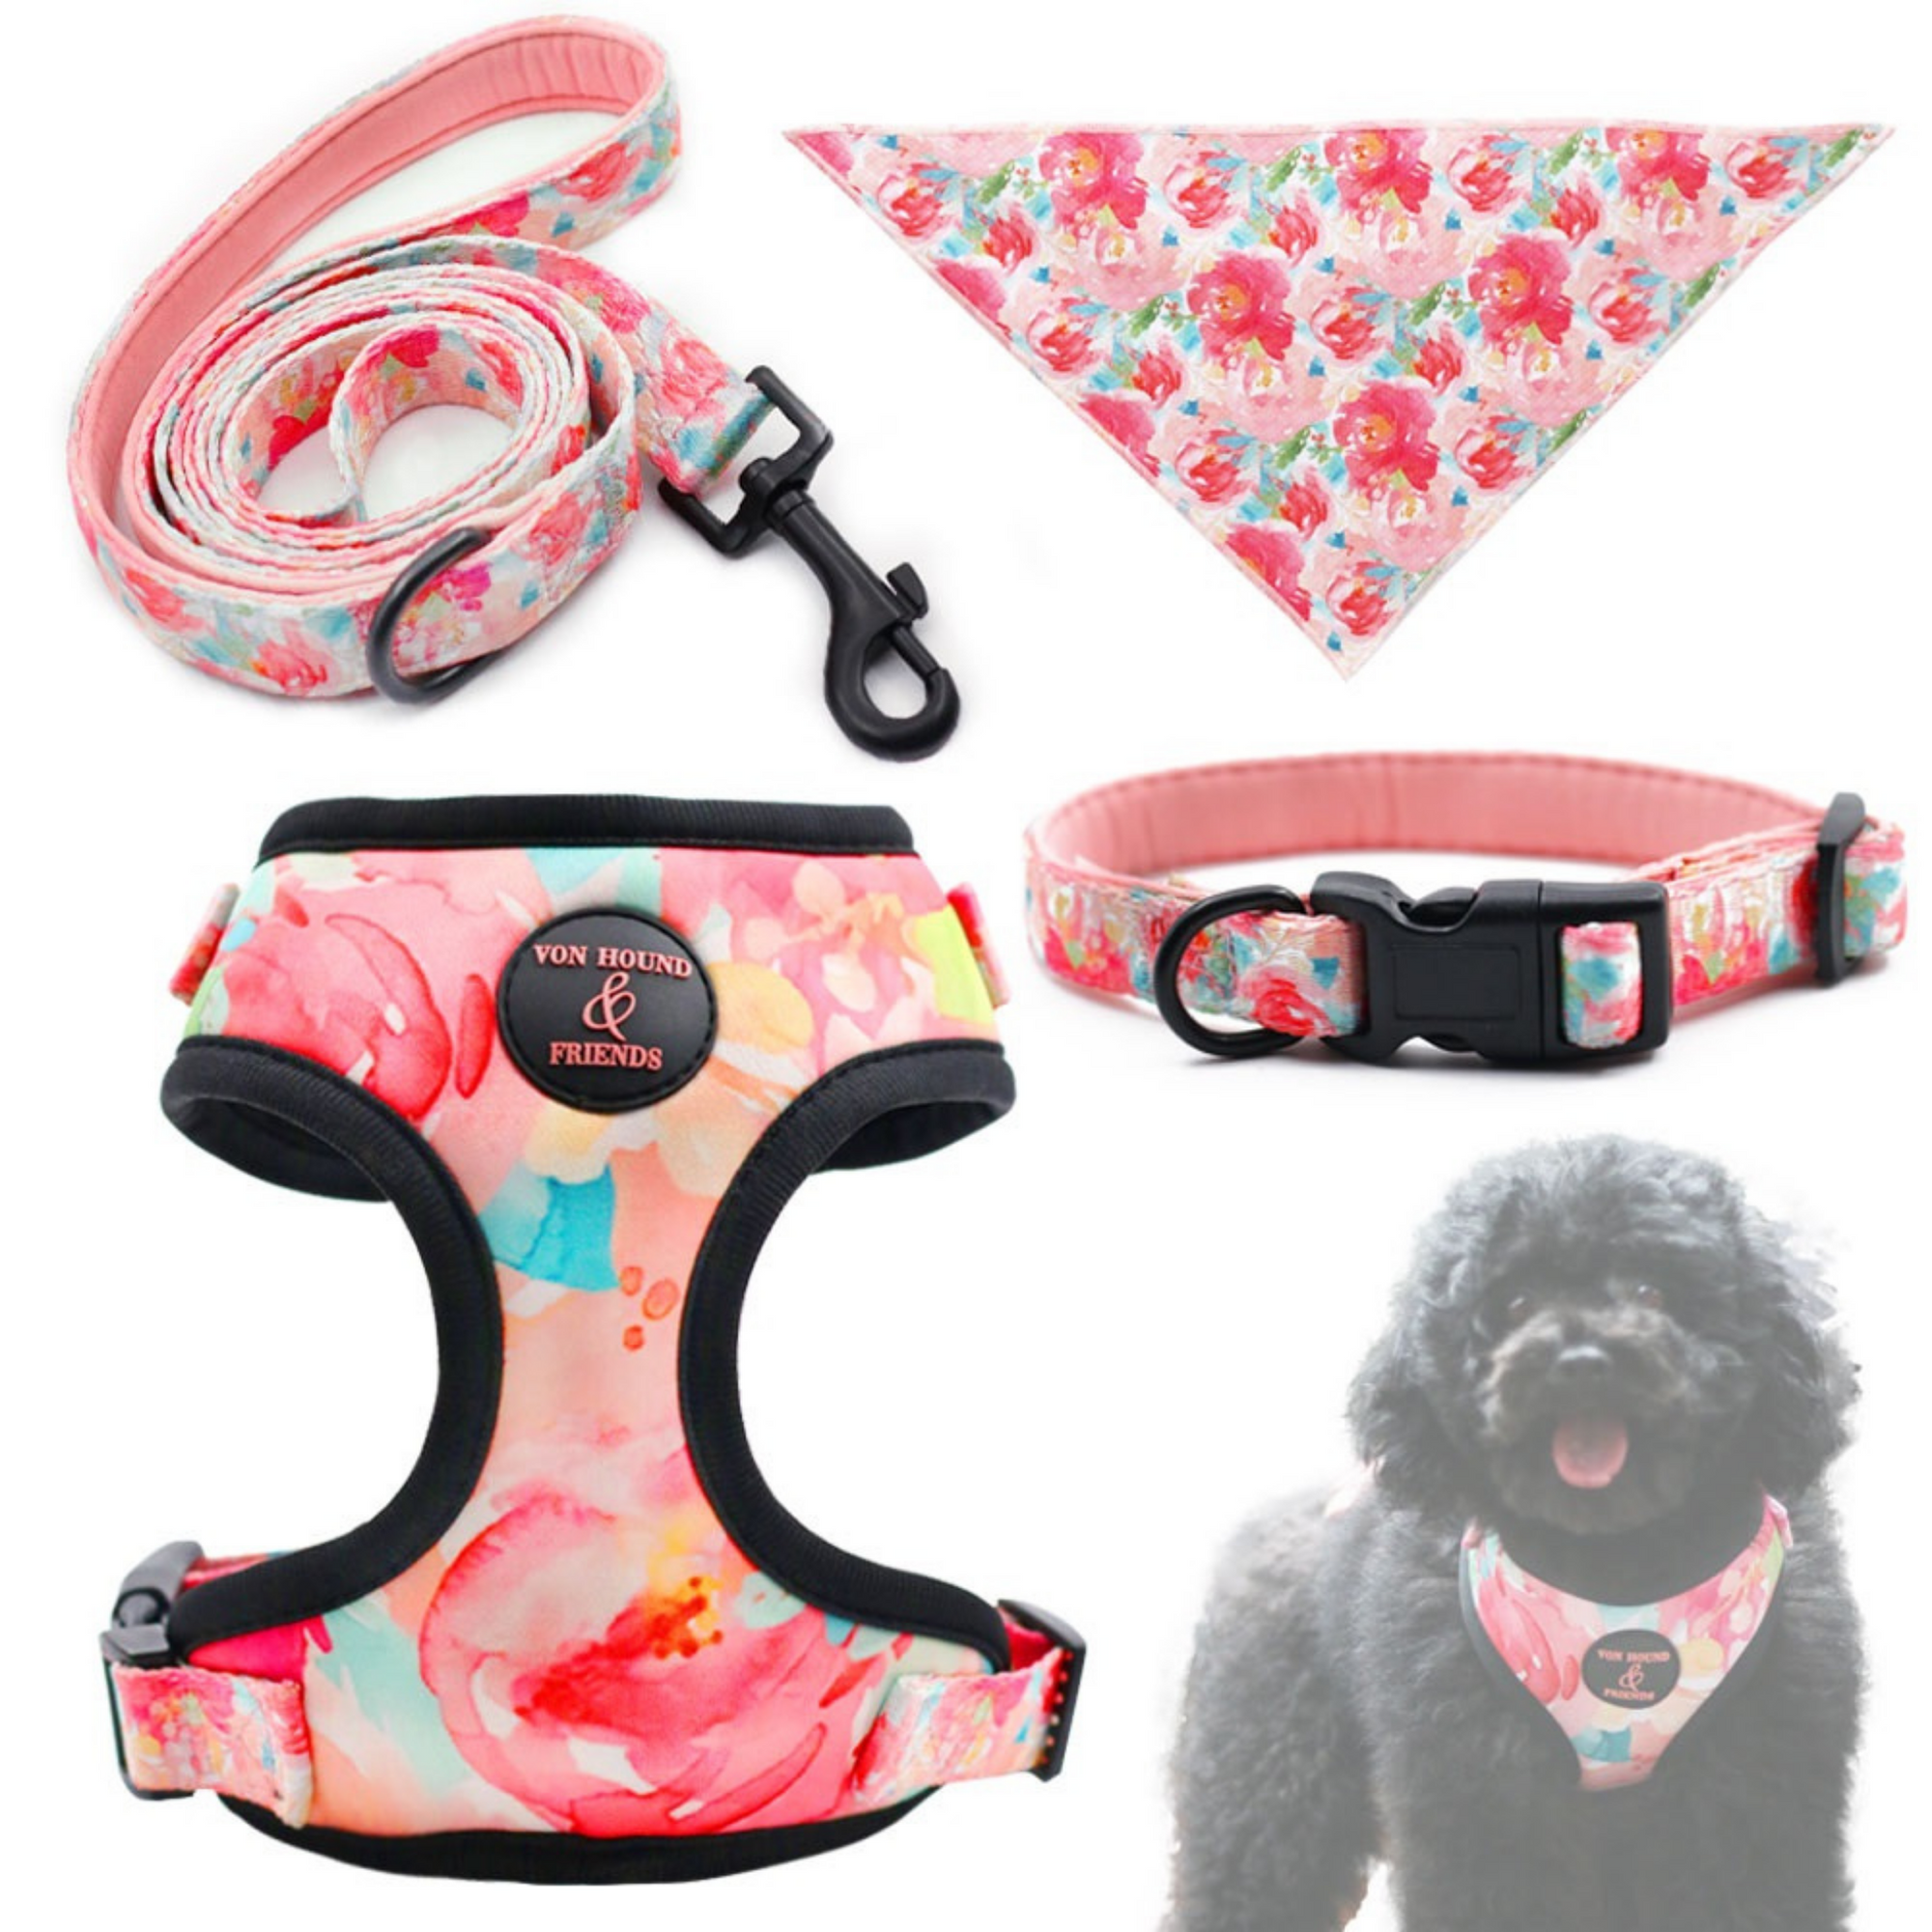 Flower Dog Harnesses Bundle - Von Hound and Friends